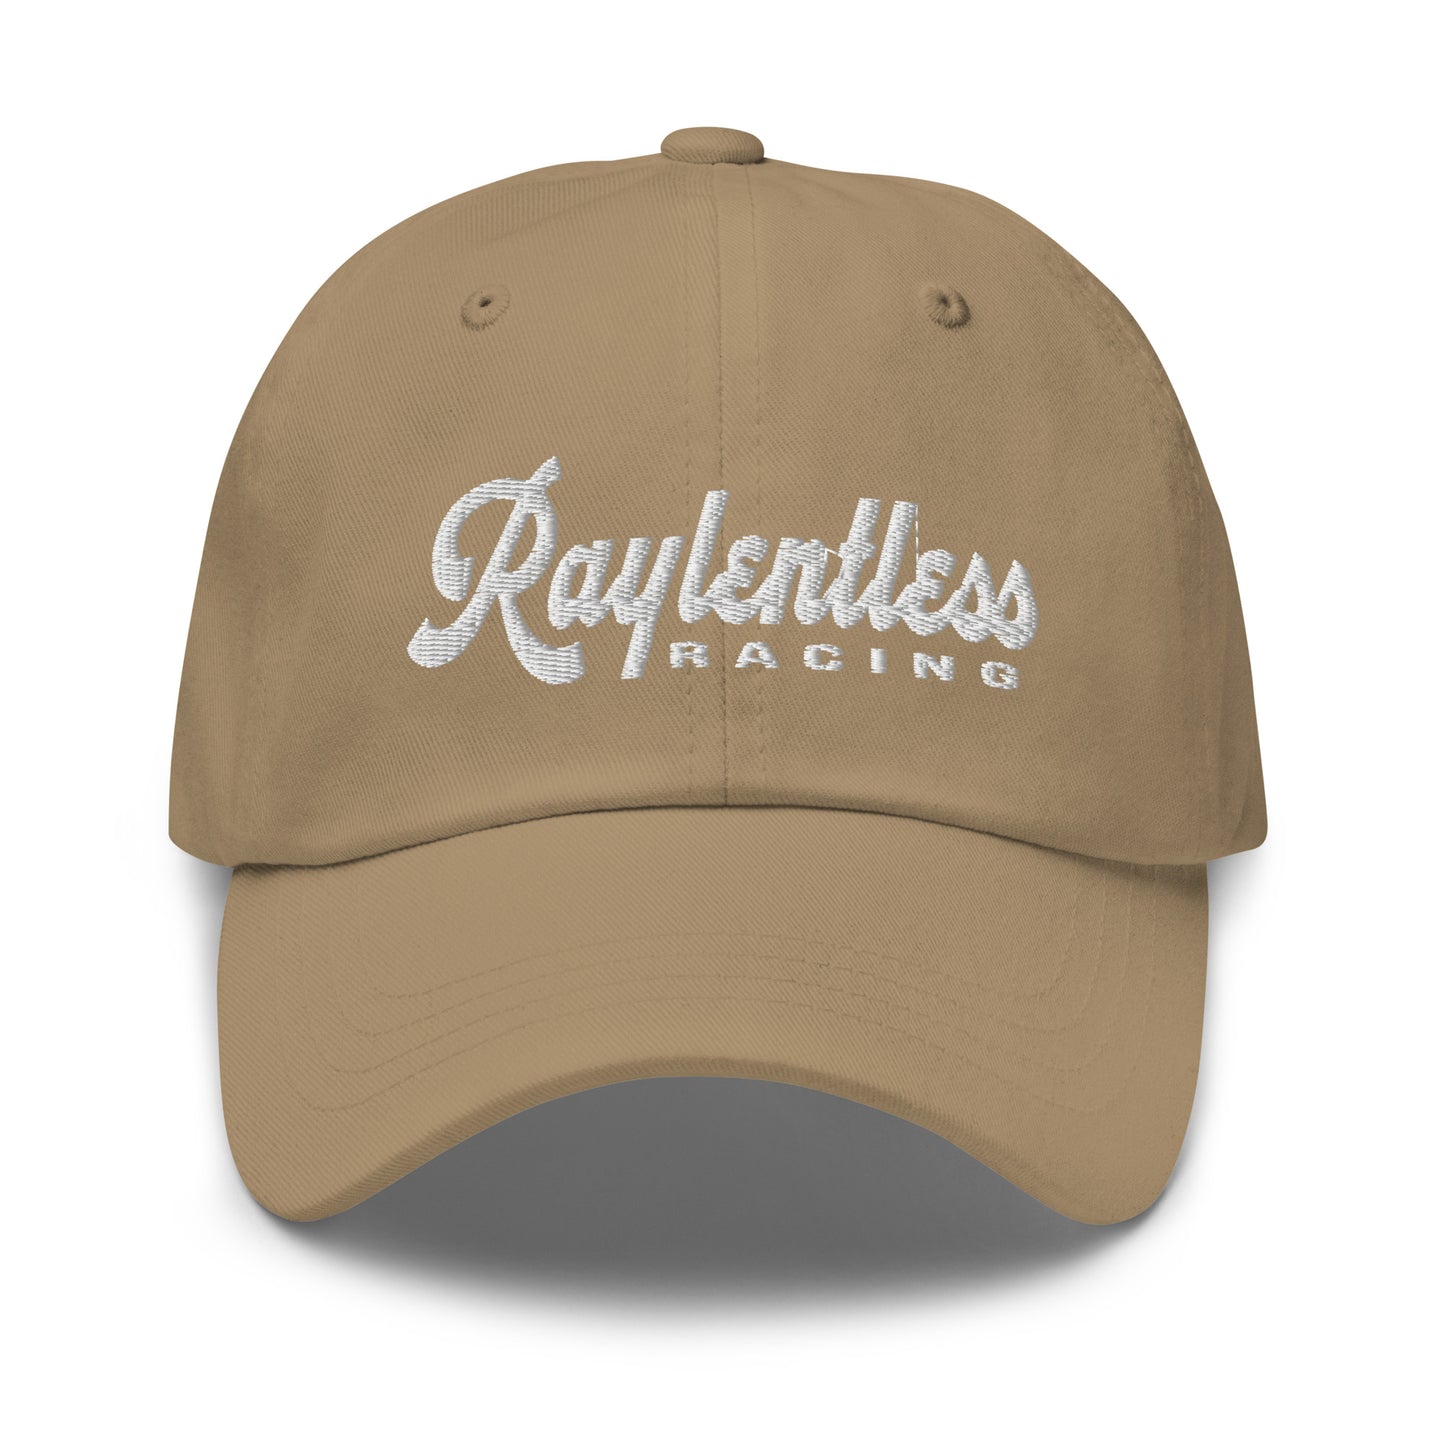 Raylentless Racing "Dad hat"